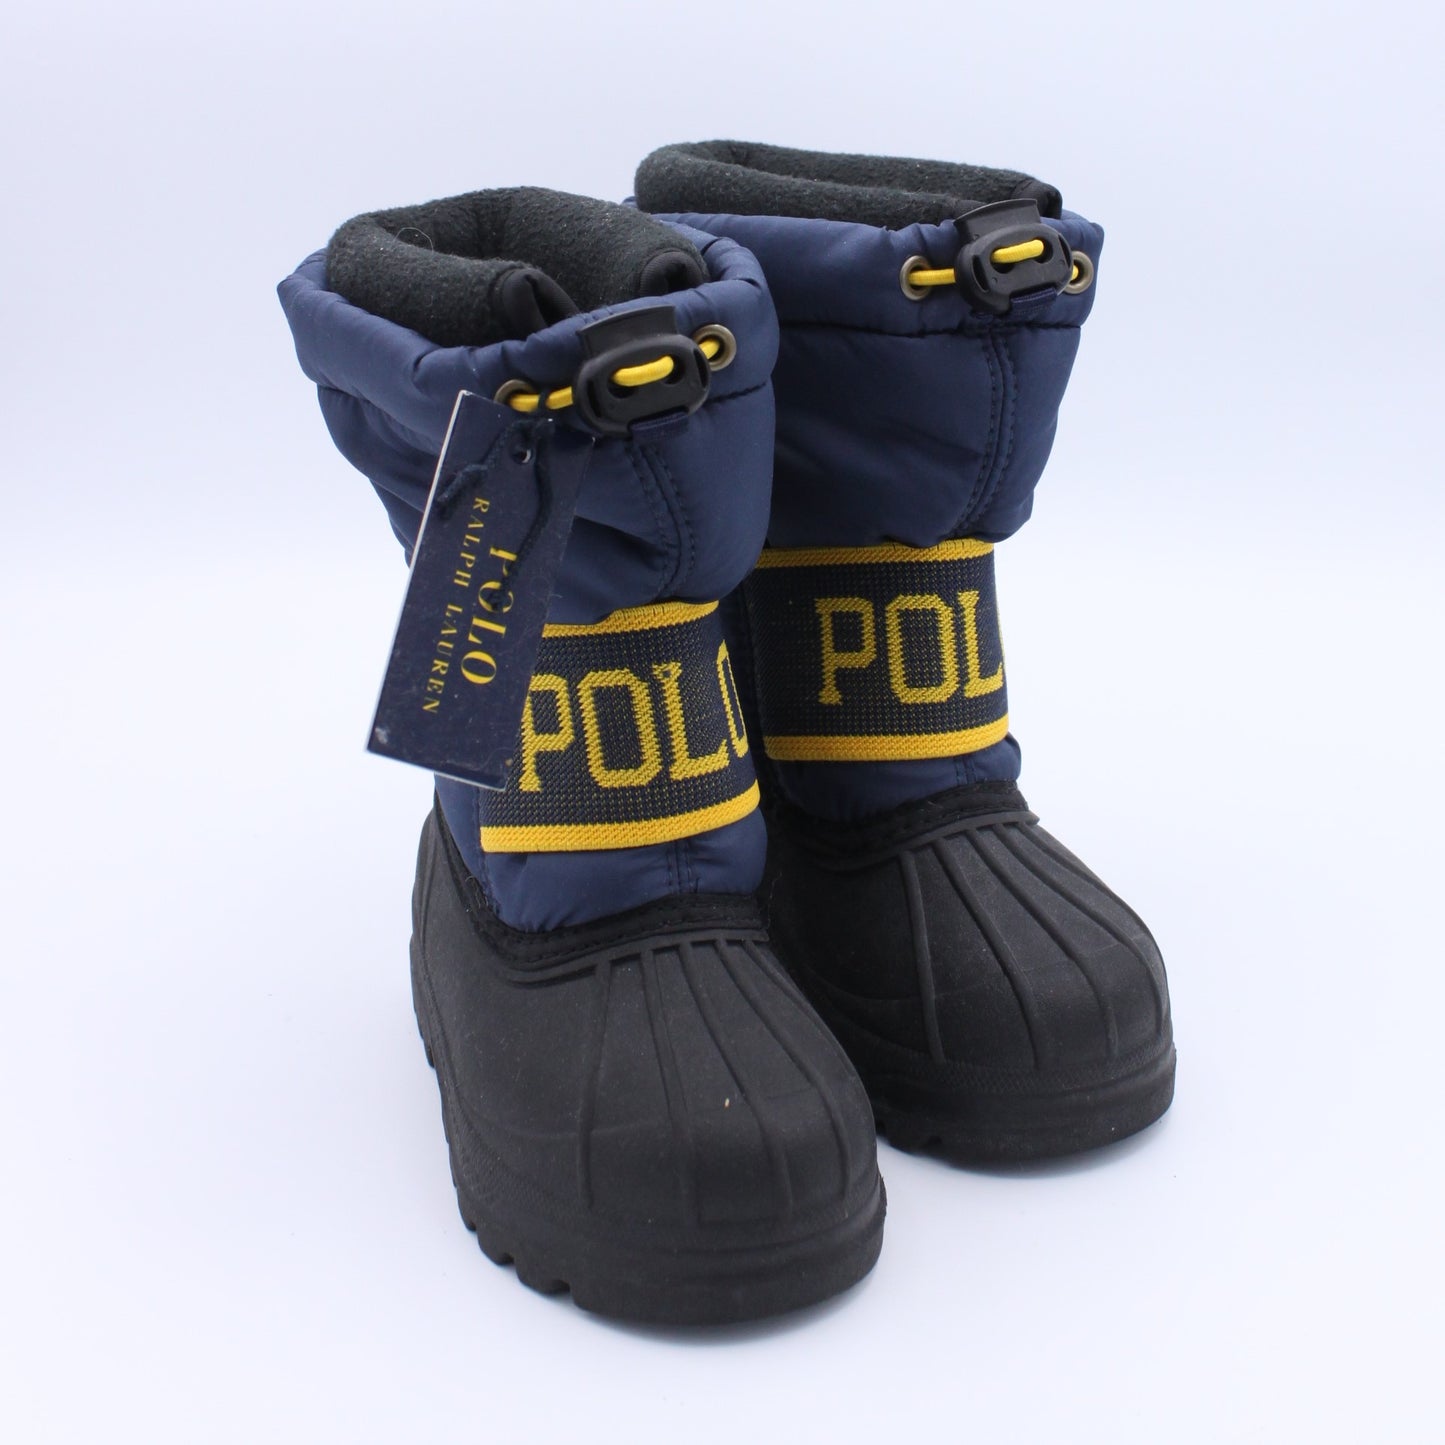 Pre-loved Snow Boots (EU19)